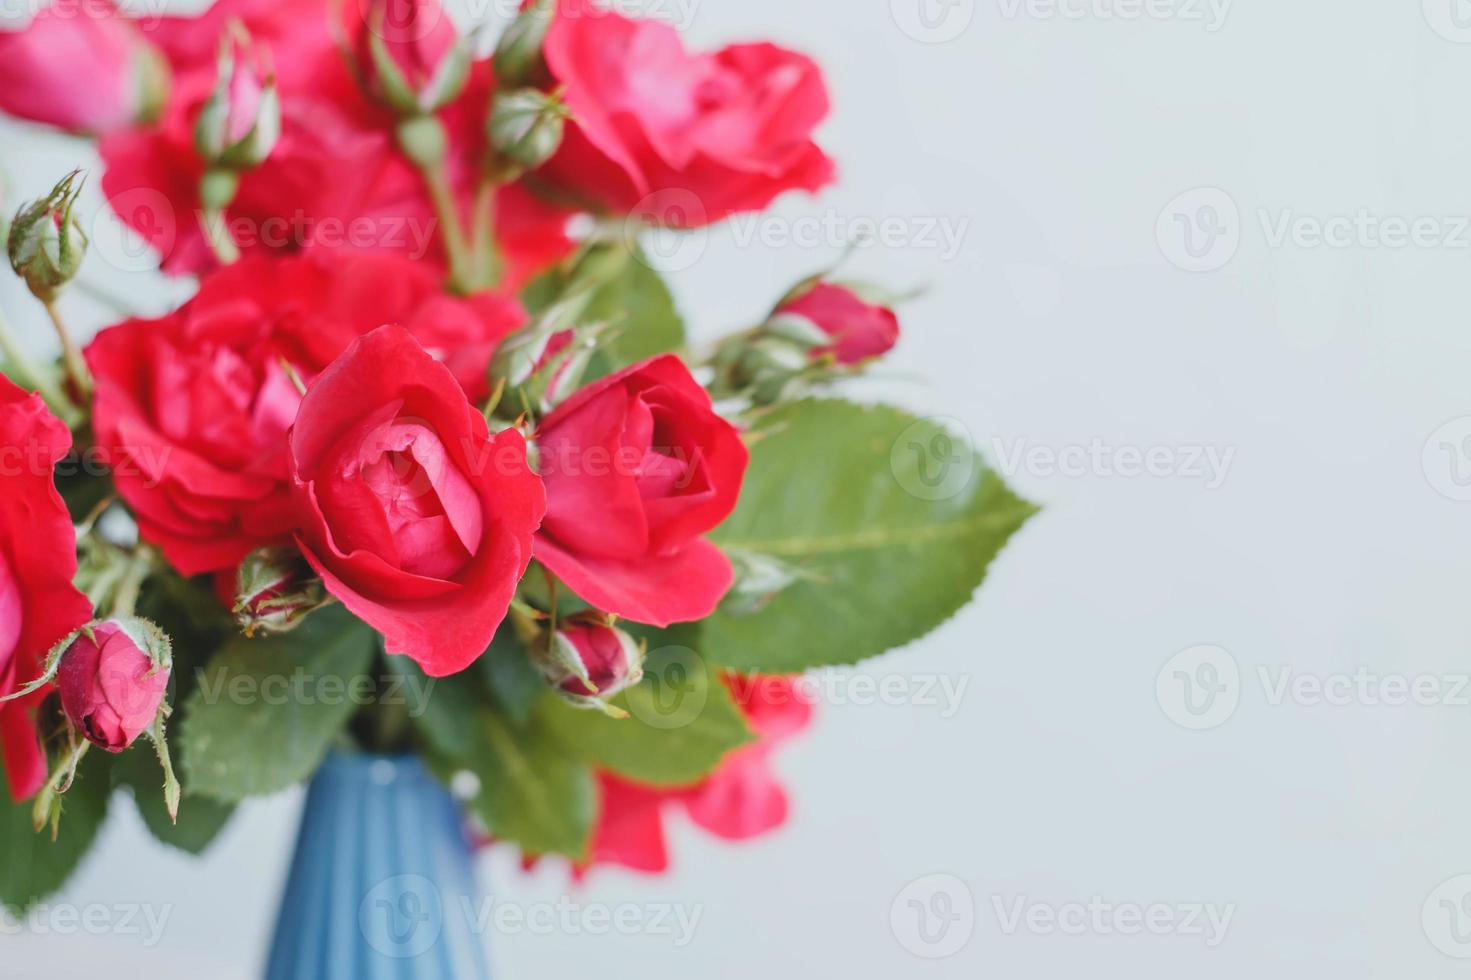 bouquet de roses rouges photo